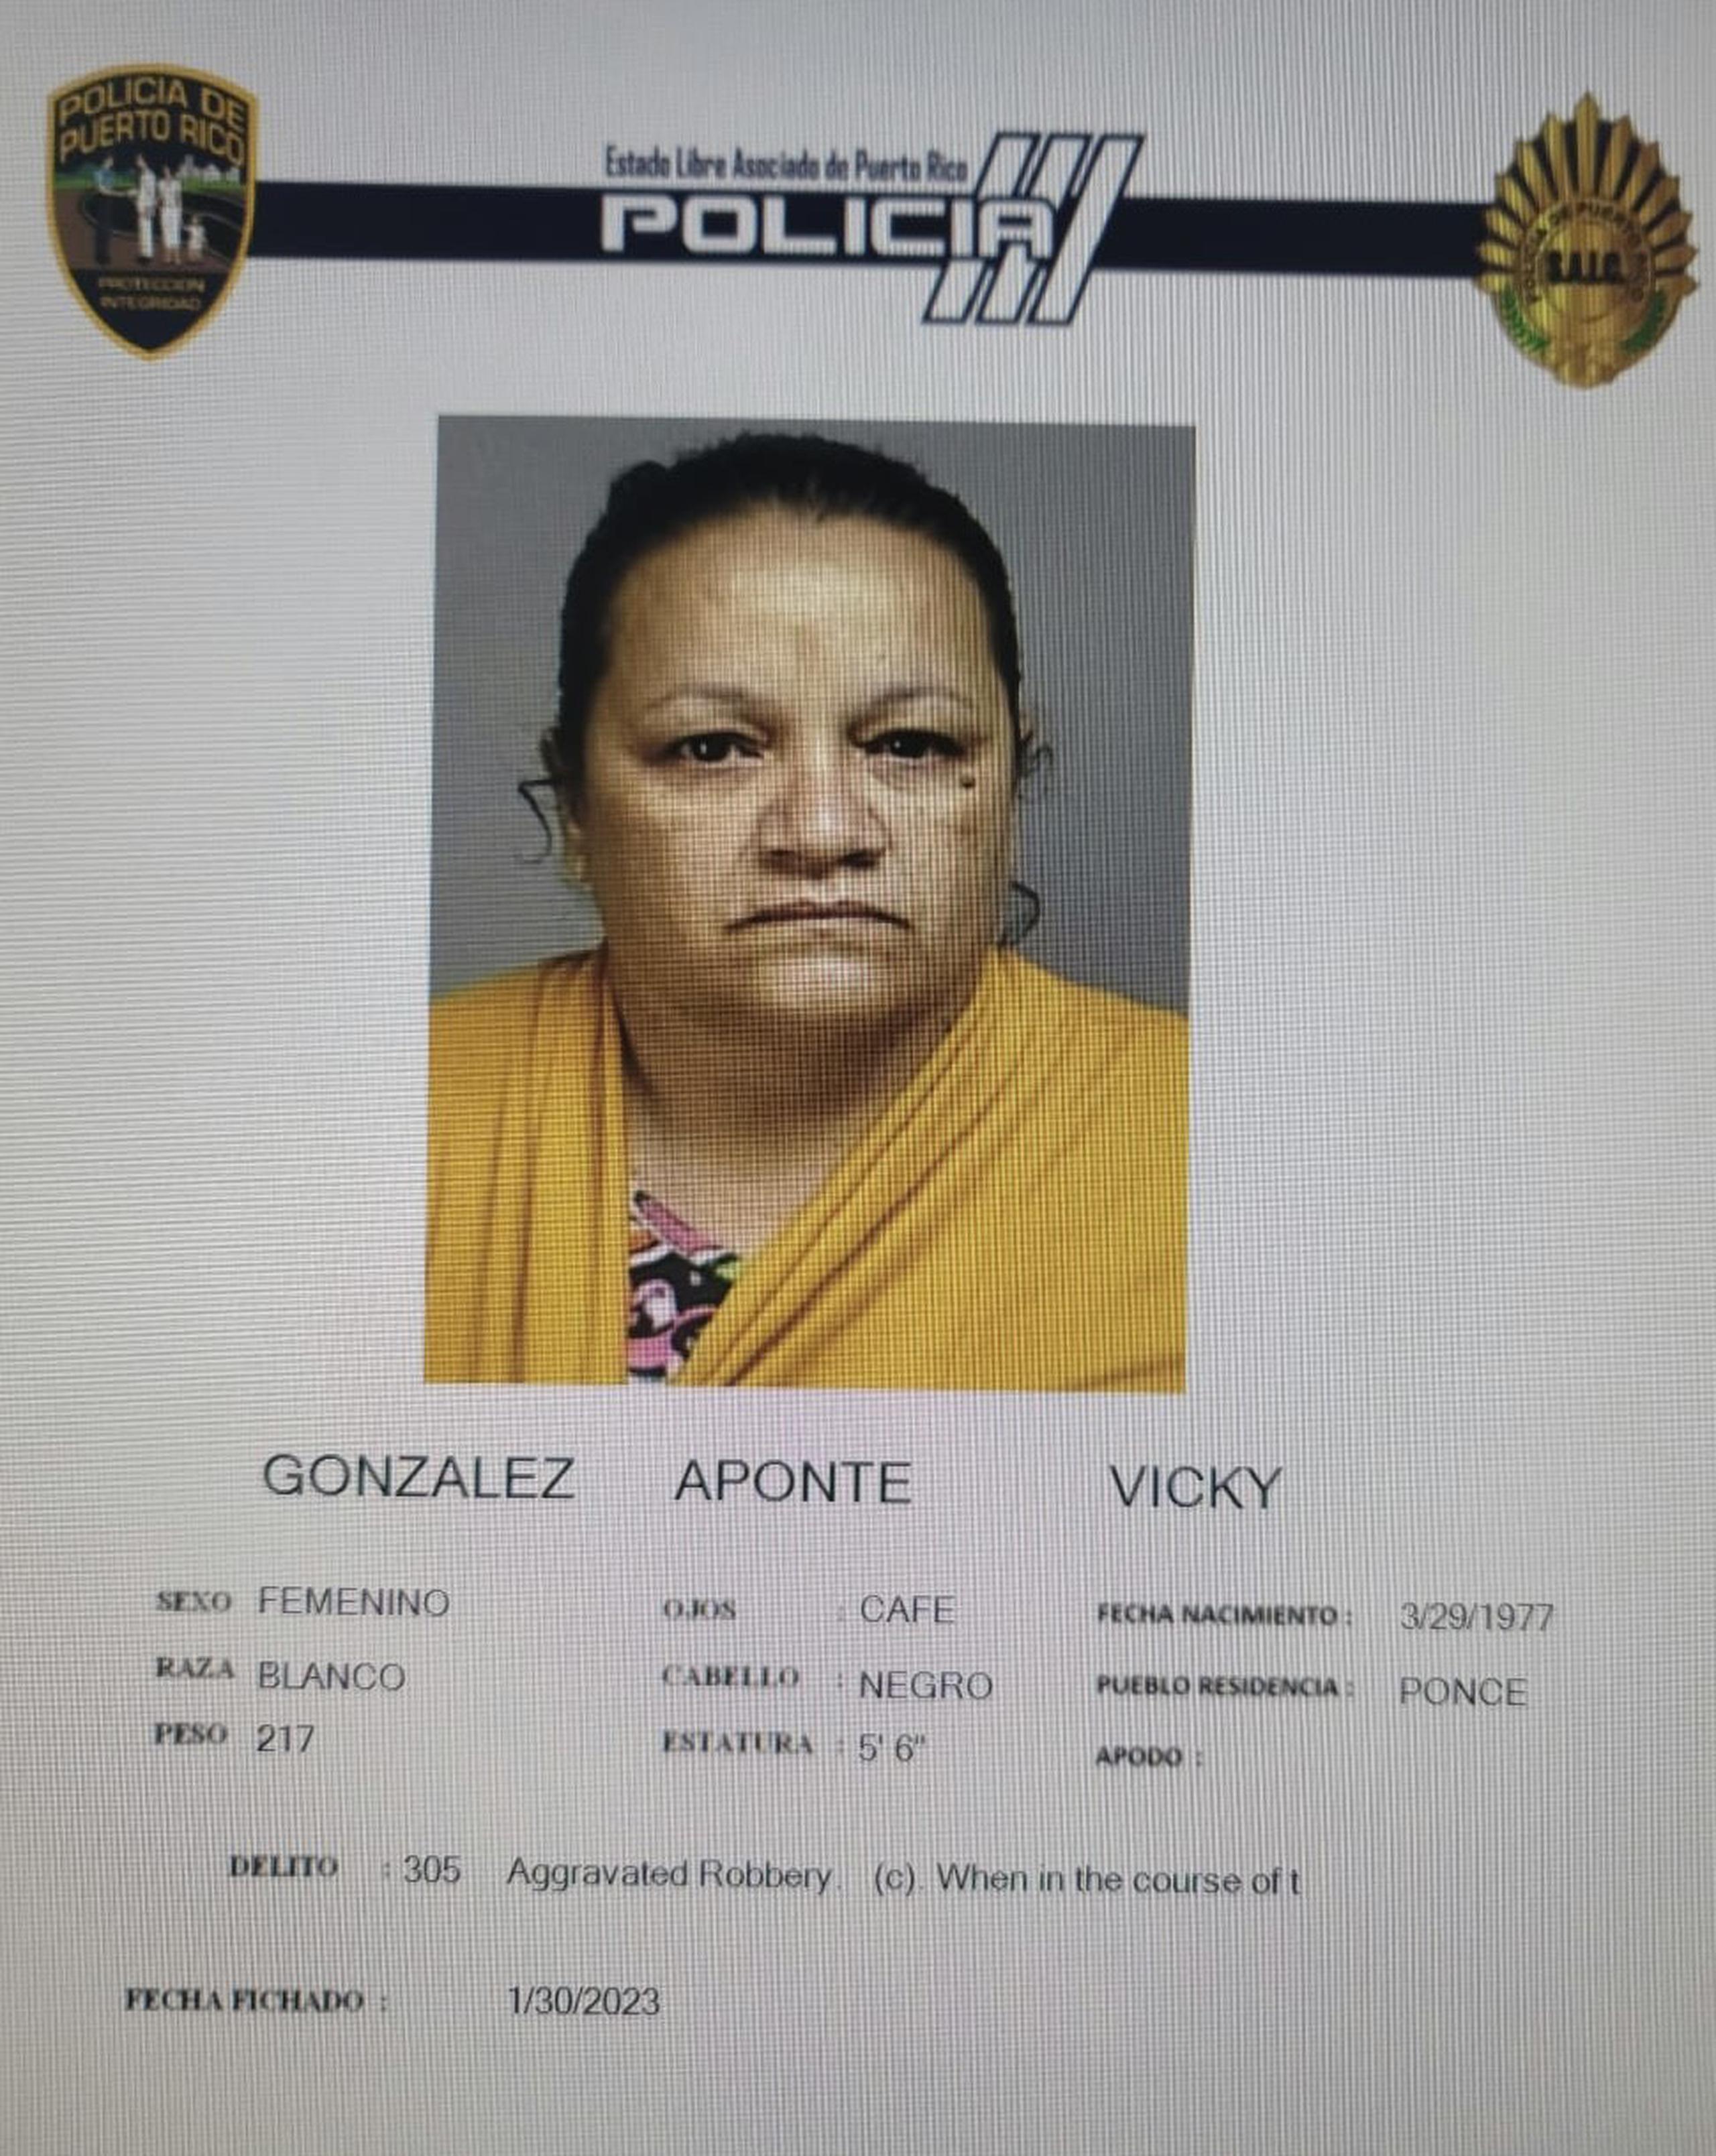 Vicky González Aponte enfrenta cargos por los delitos de robo agravado, 6.05 (portación, transportación o uso de armas de fuego sin licencia) de La Ley de Armas y amenaza.